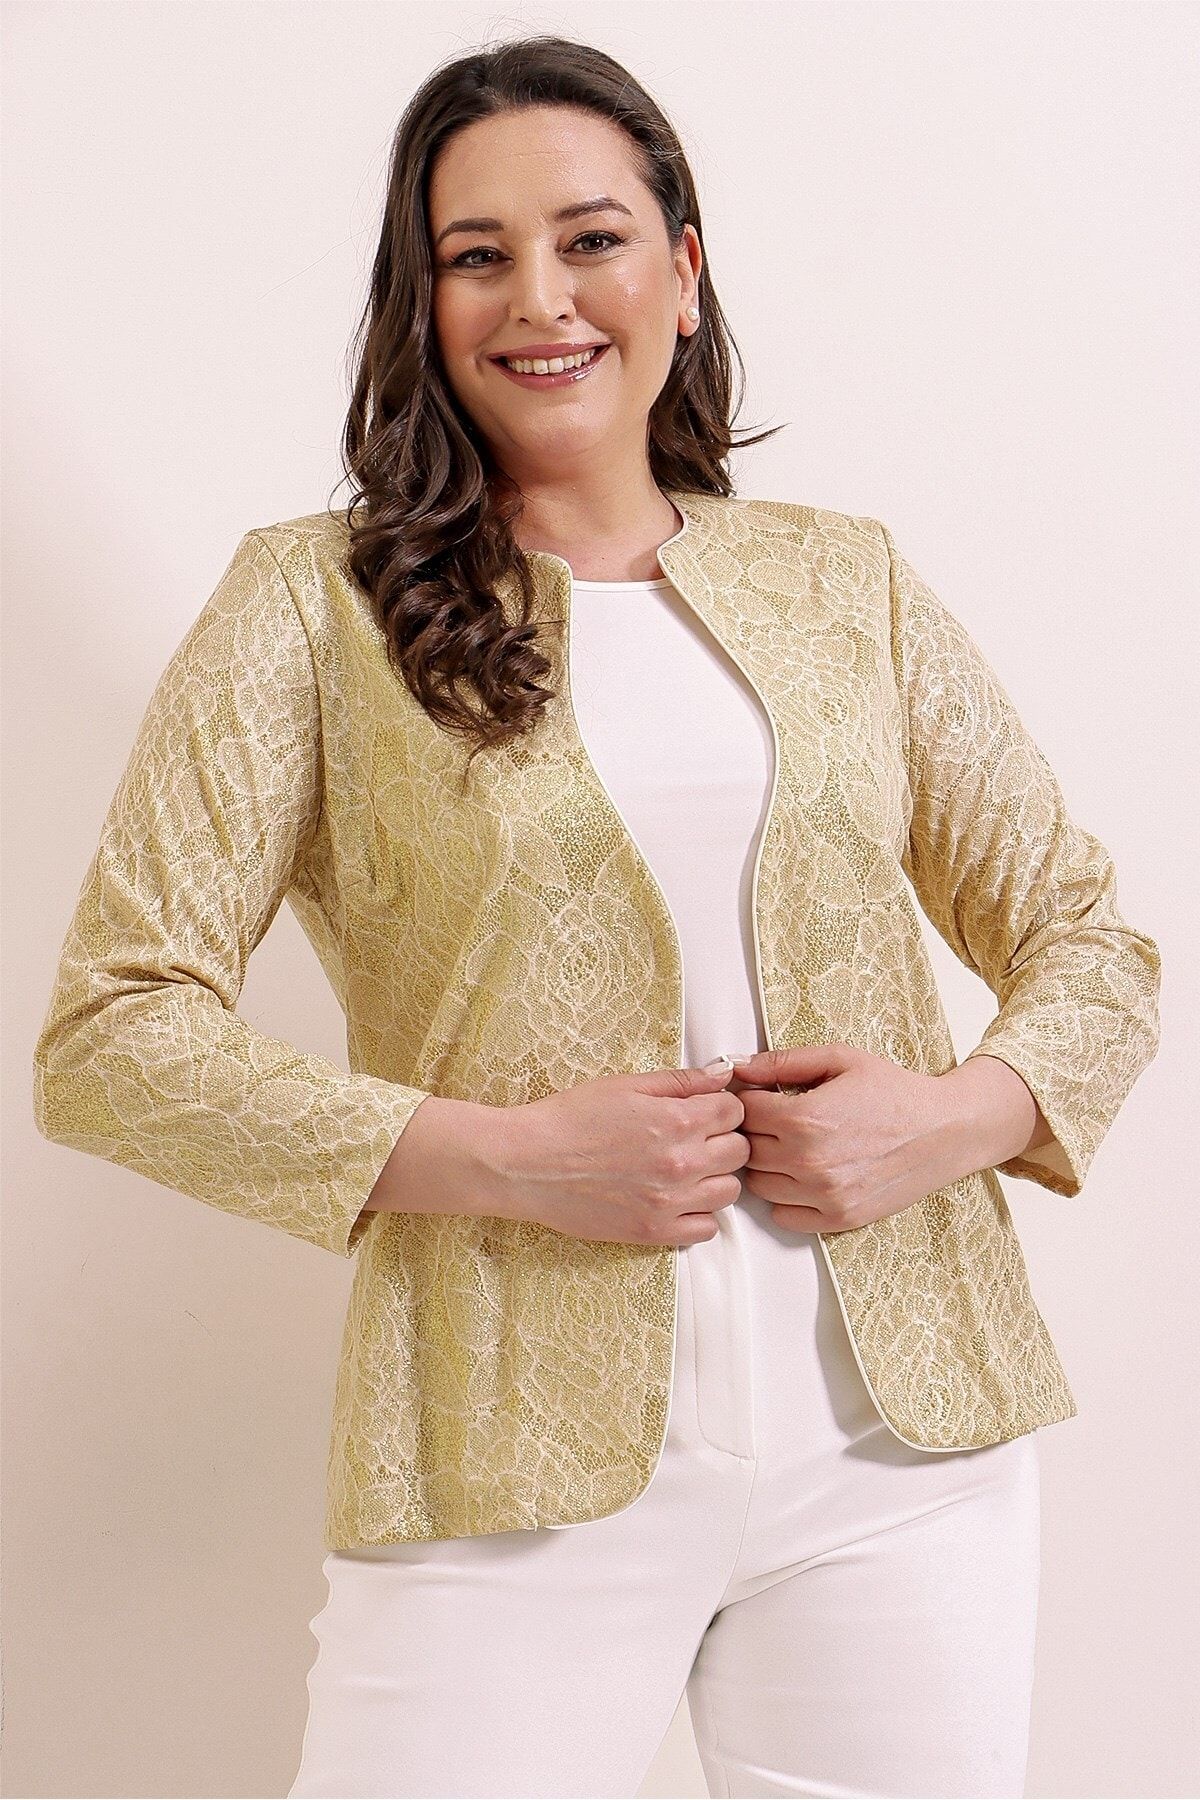 By Saygı Içi Likralı Bluz Çiçek Desenli Simli Ceket Büyük Beden 2'litakım Gold